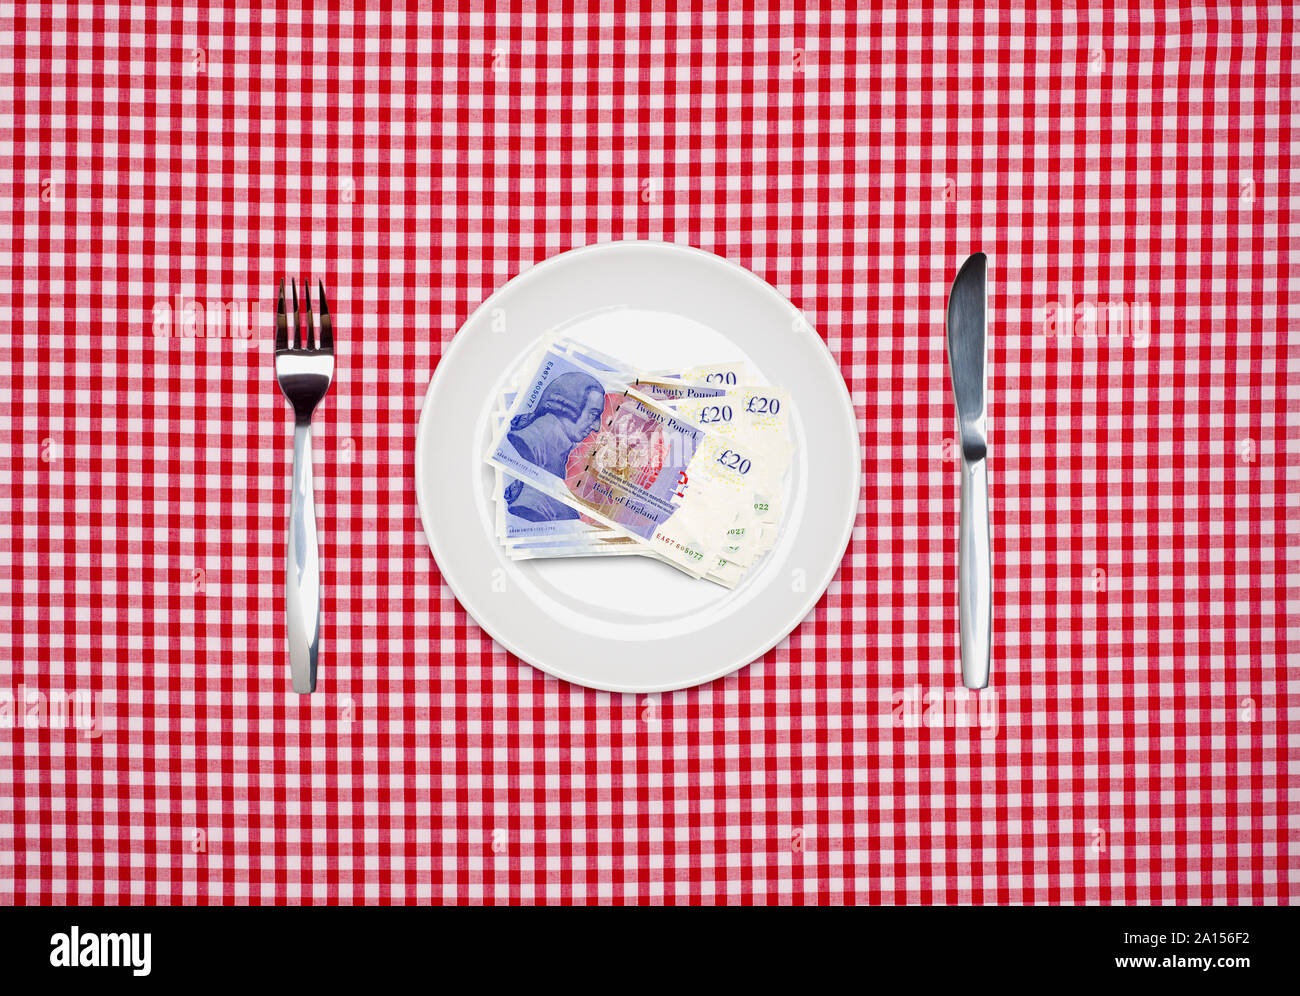 20 Pfund Noten GBP Sterling Banknoten auf einem weißen Teller mit Messer und Gabel Ansicht von oben Stockfoto